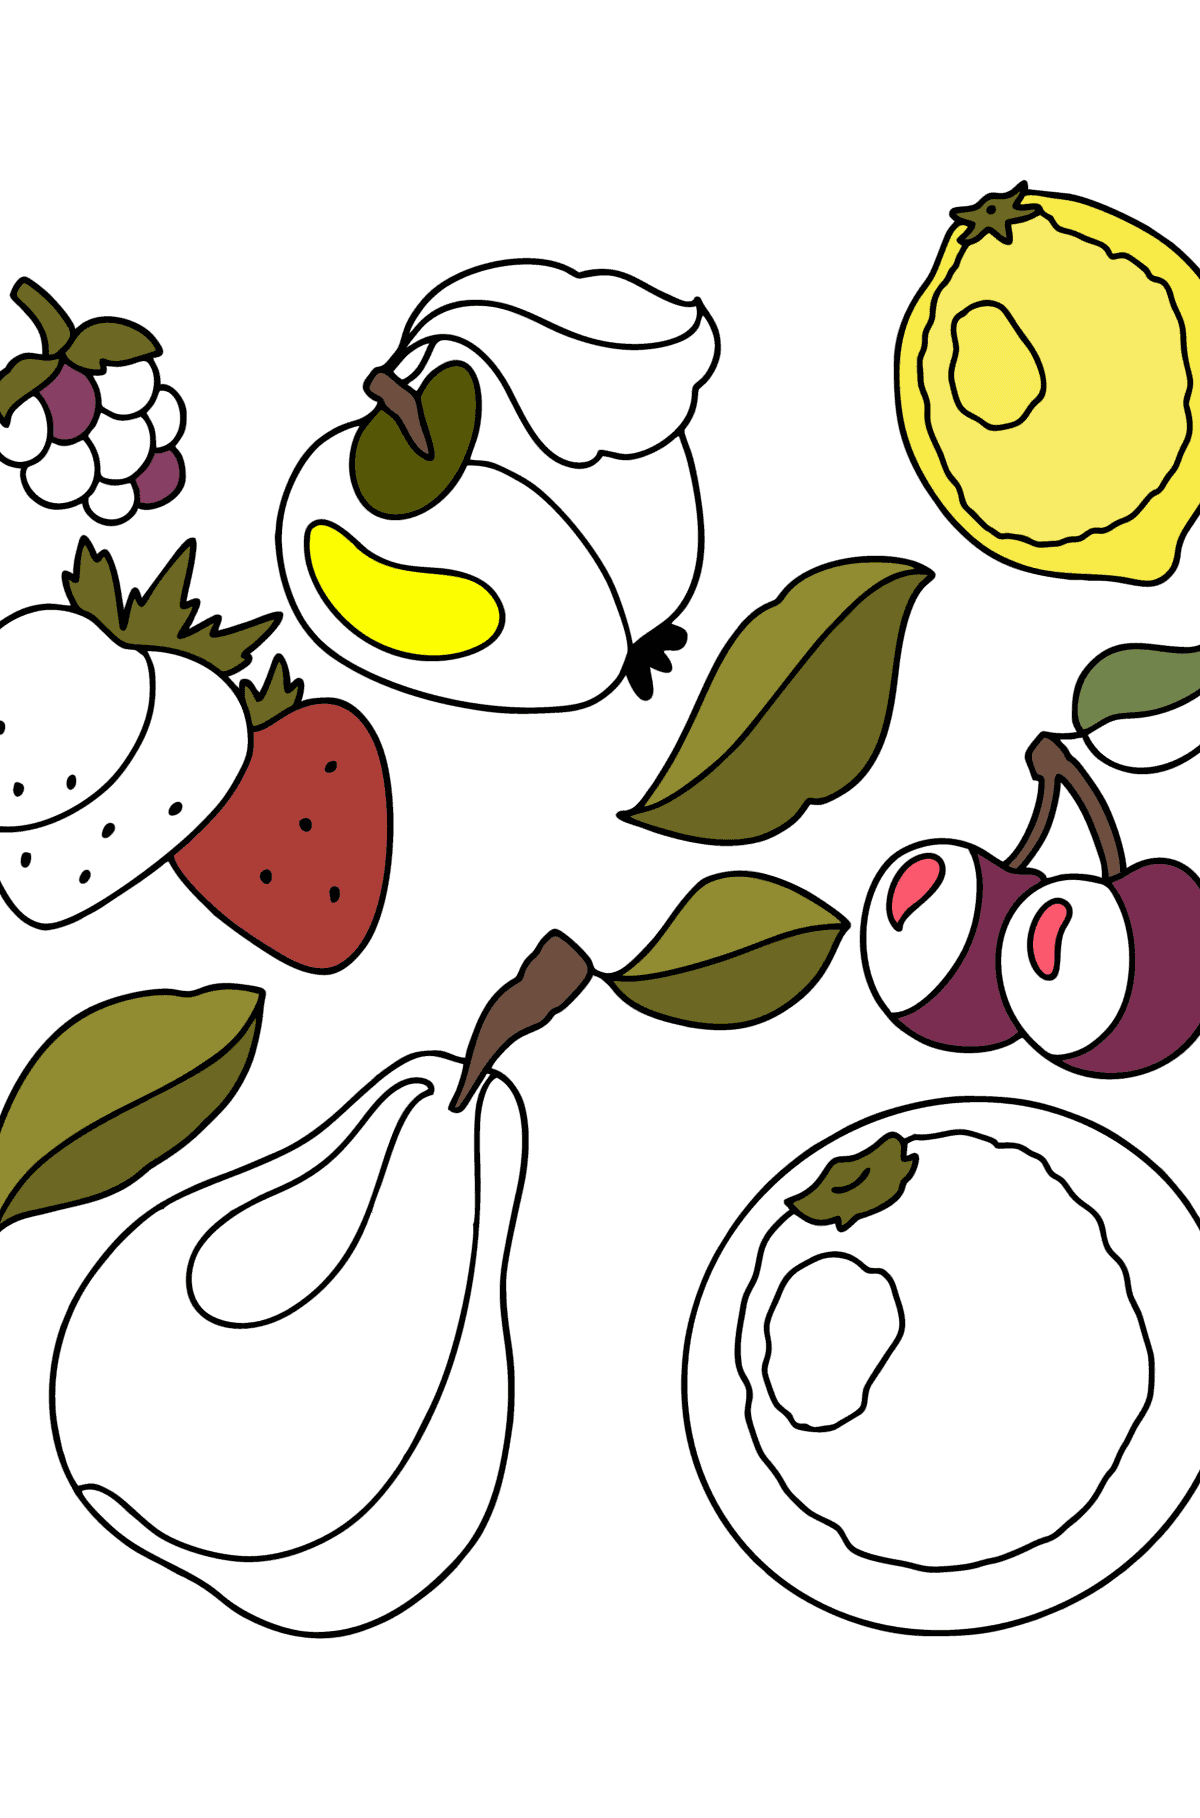 Boyama sayfası Meyve seti 1 - Boyamalar çocuklar için